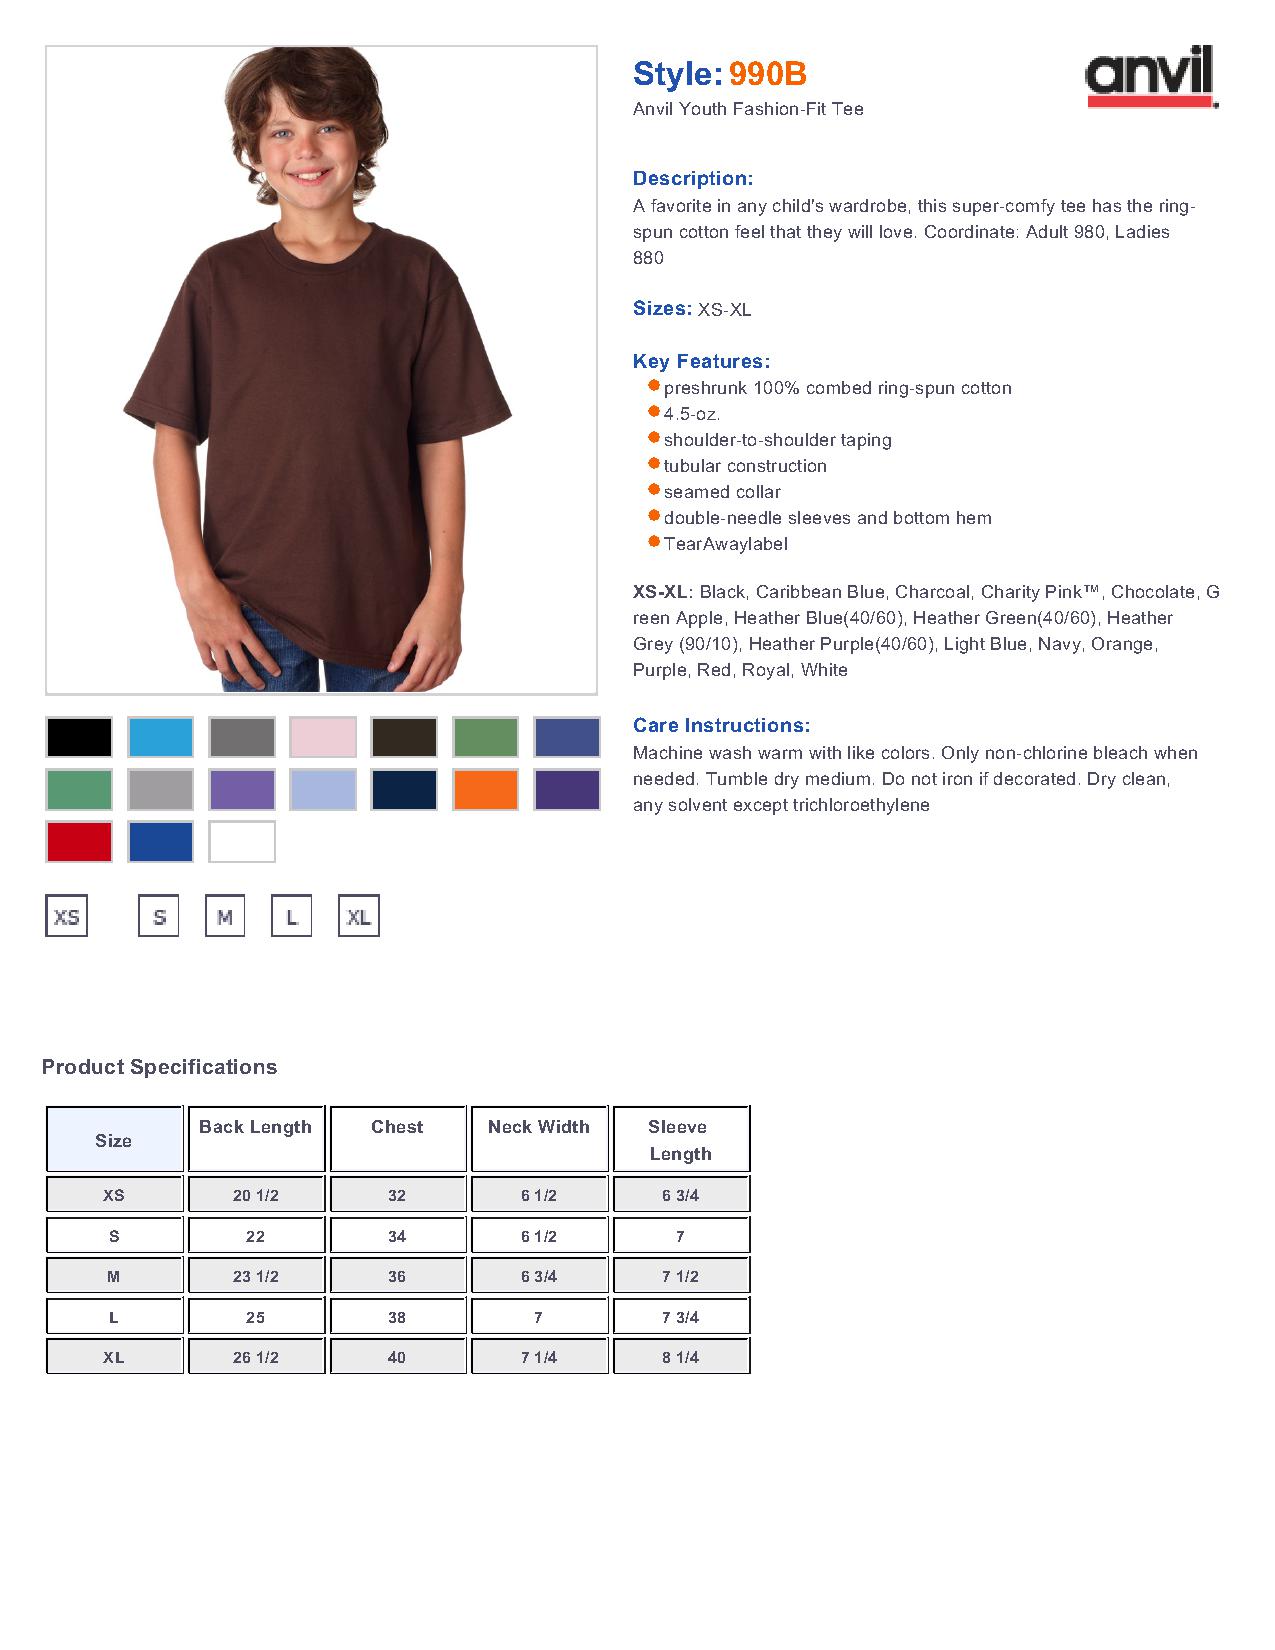 Anvil 990B Youth Ringspun Fashion Fit T-Shirt $3.89 - T Shirts